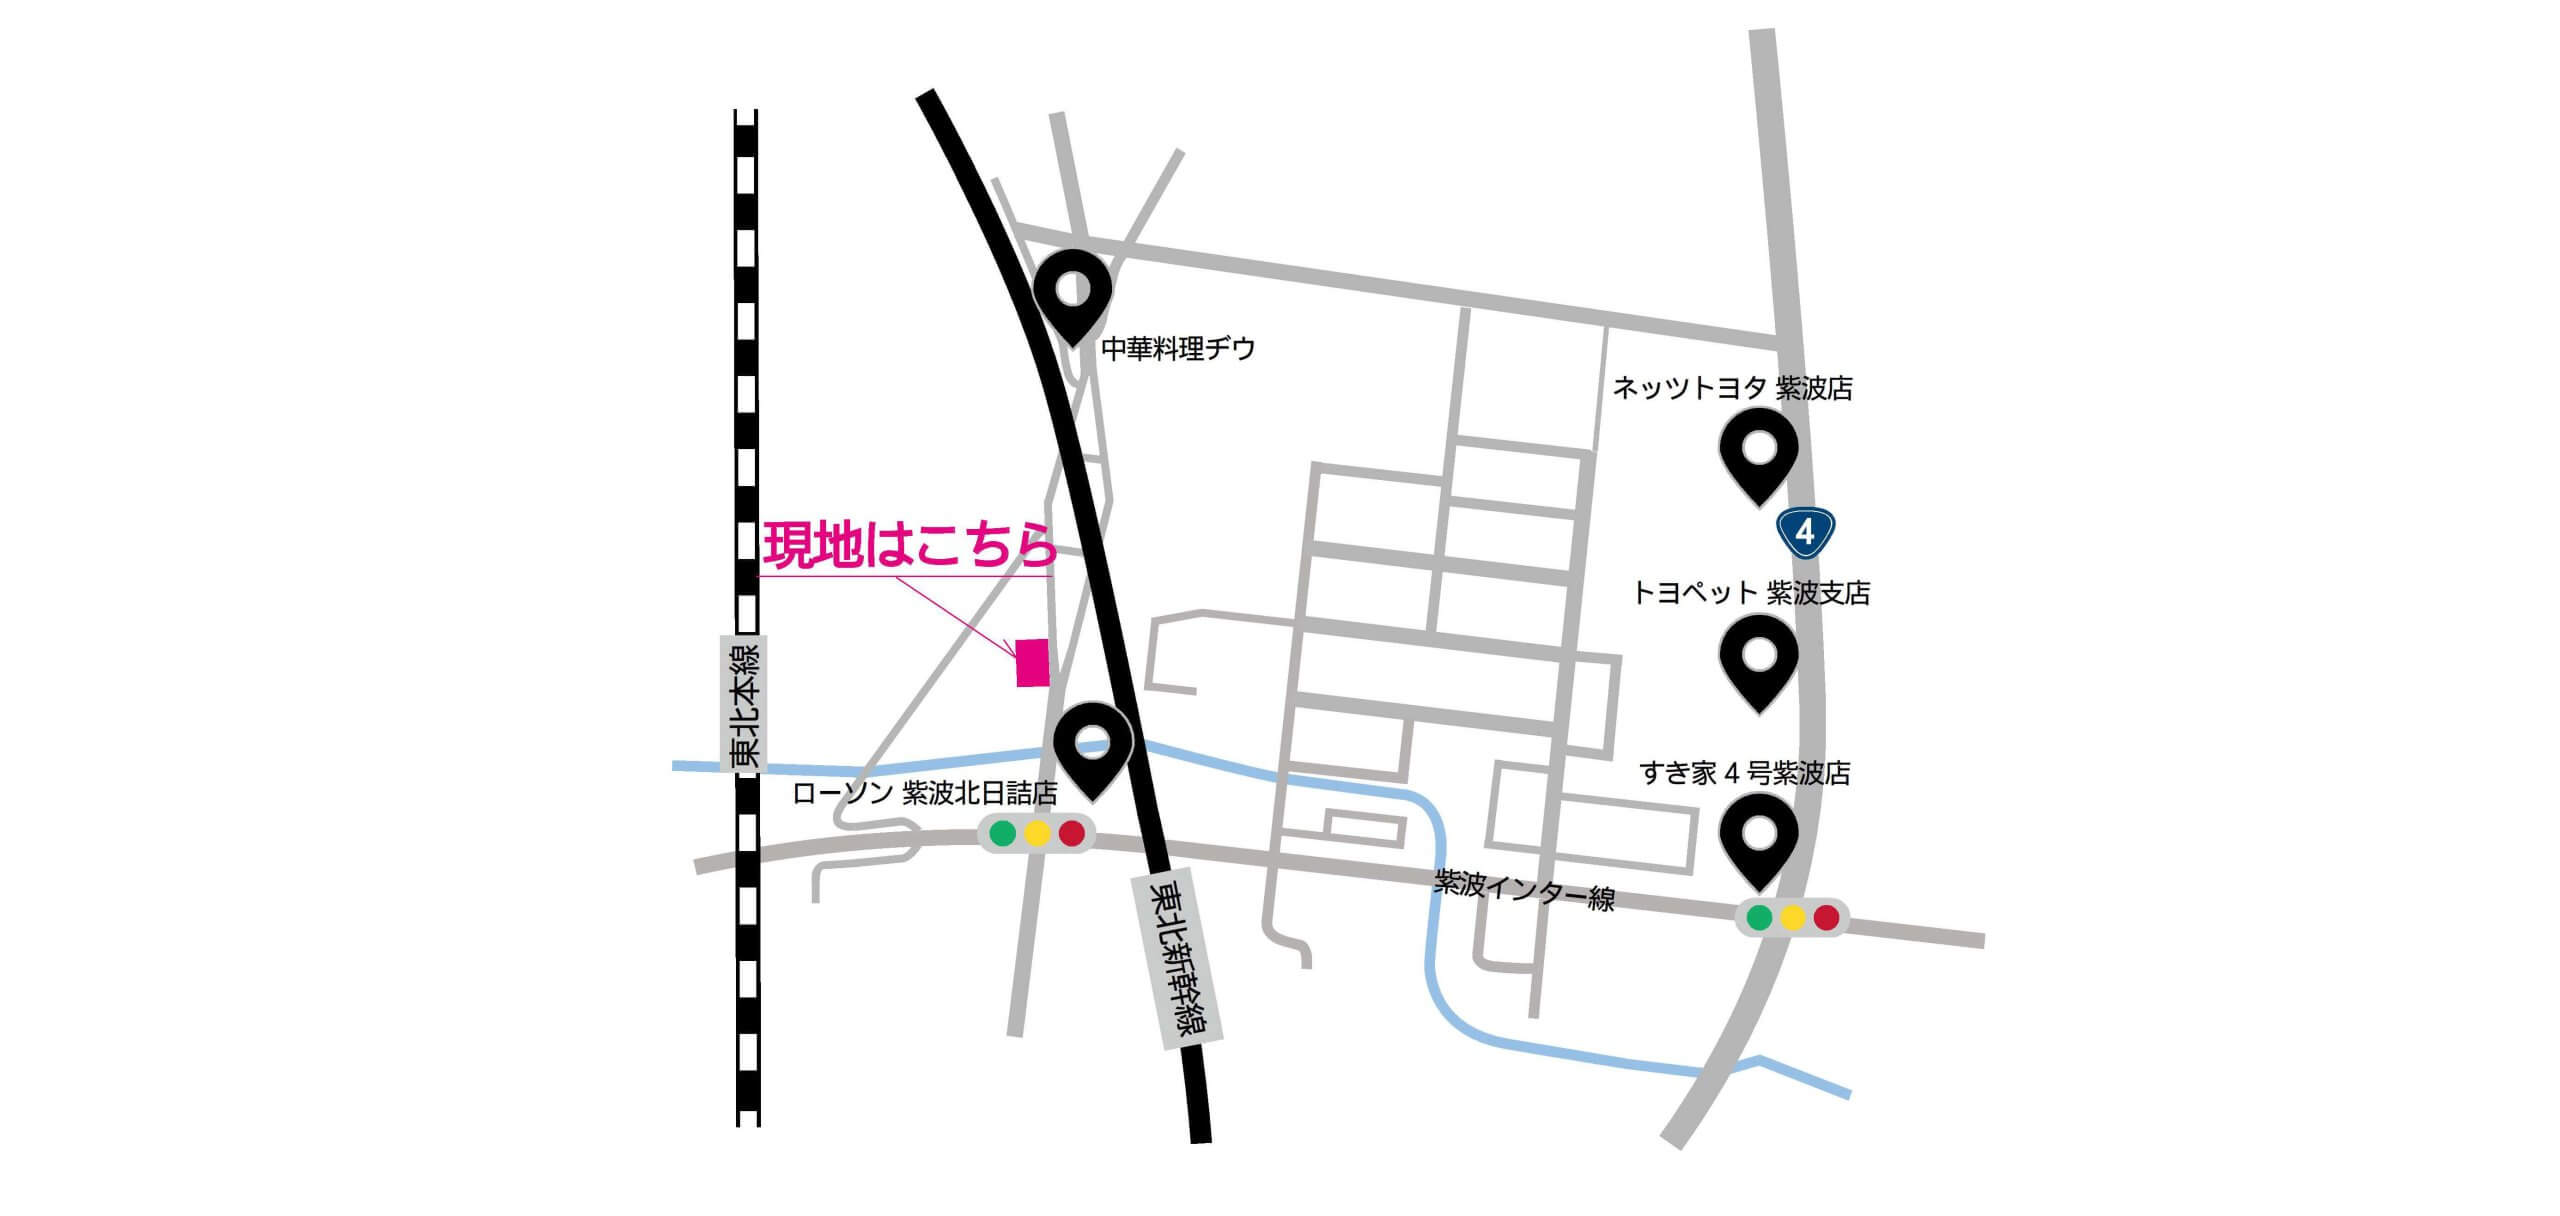 【案内図】桜町高木まちなか展示場